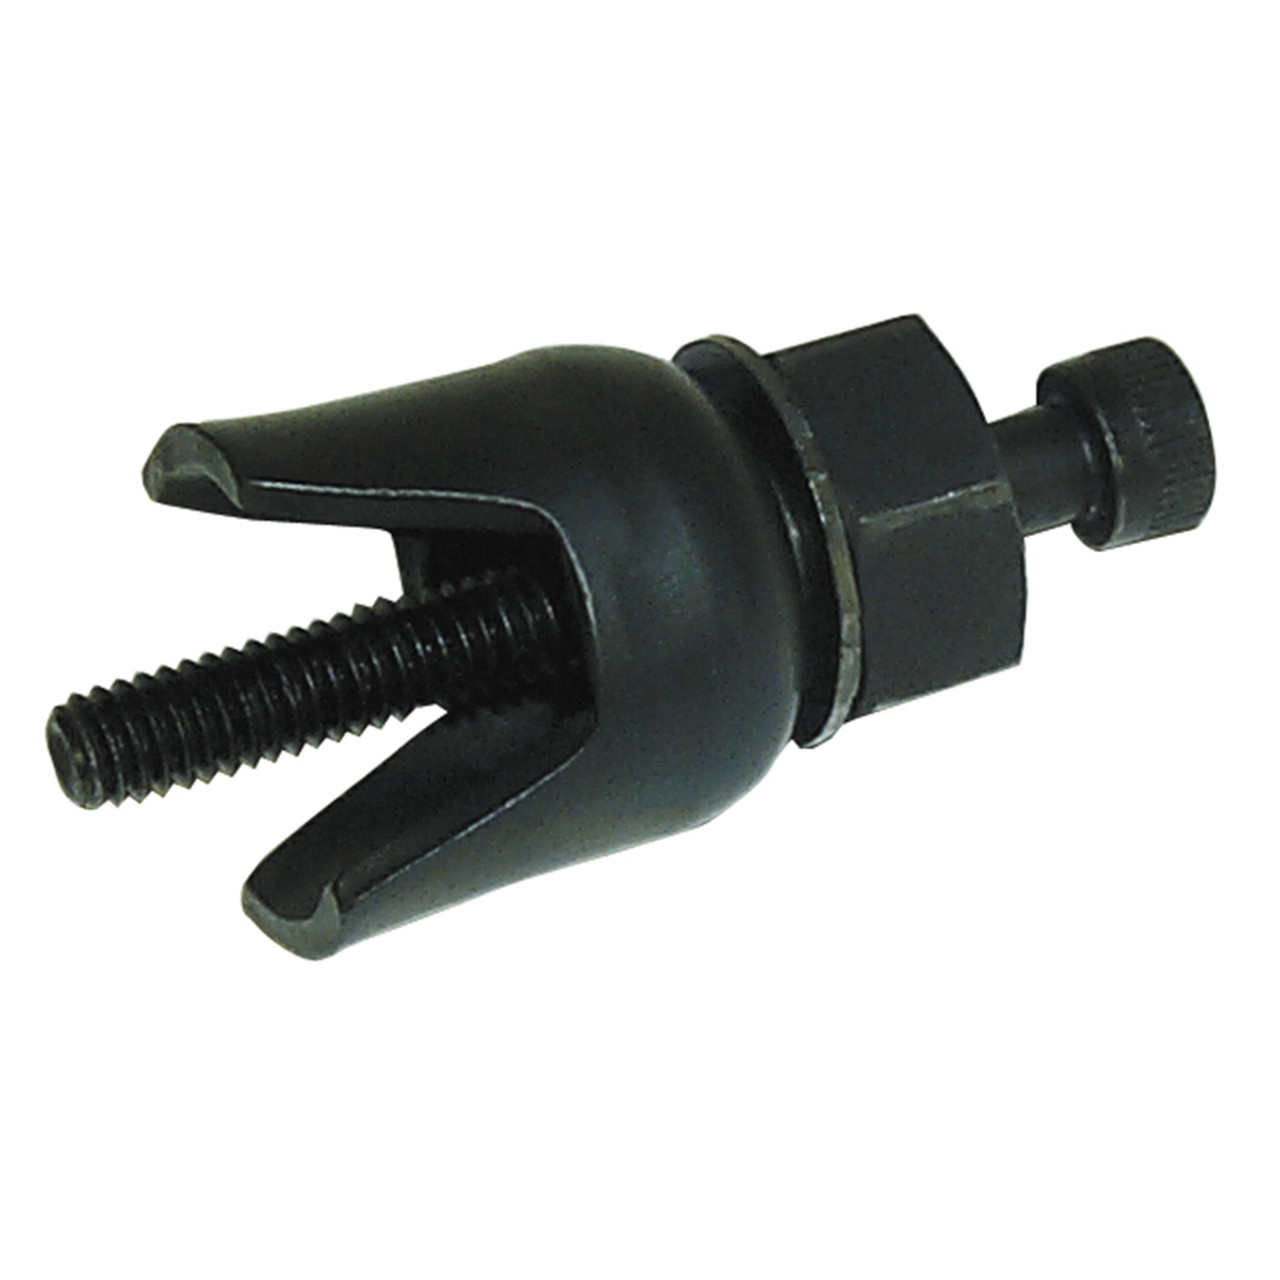 Lisle Pivot Pin Remover LIS19940